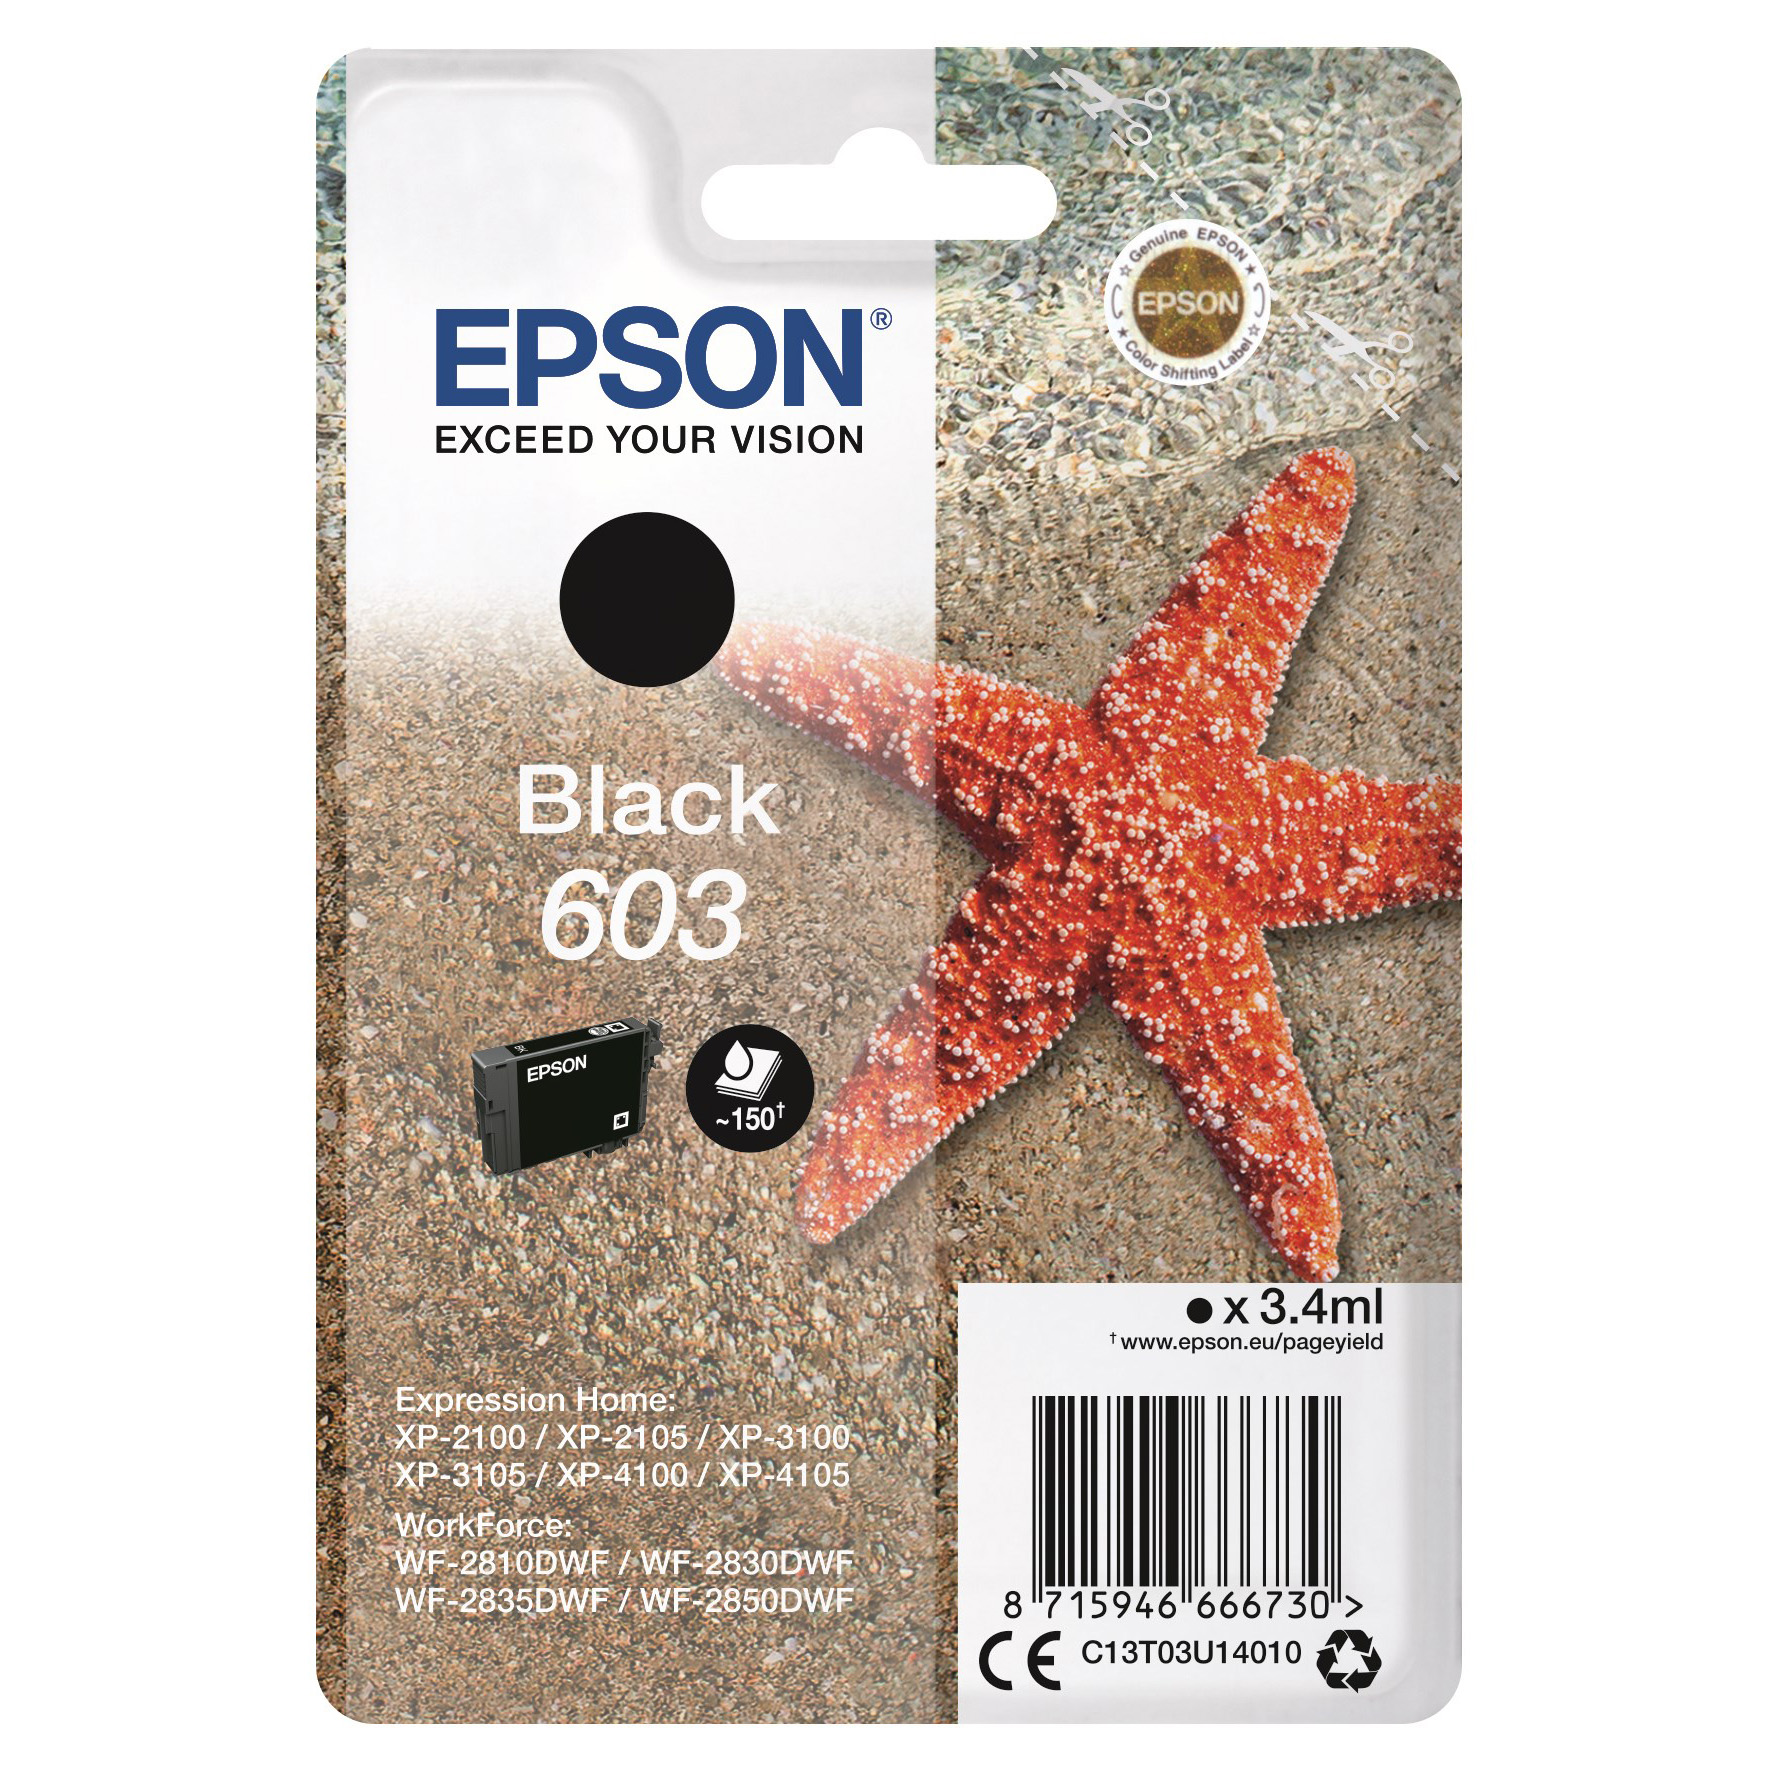 [5701533] Bläck Epson 603 svart 3,4ml